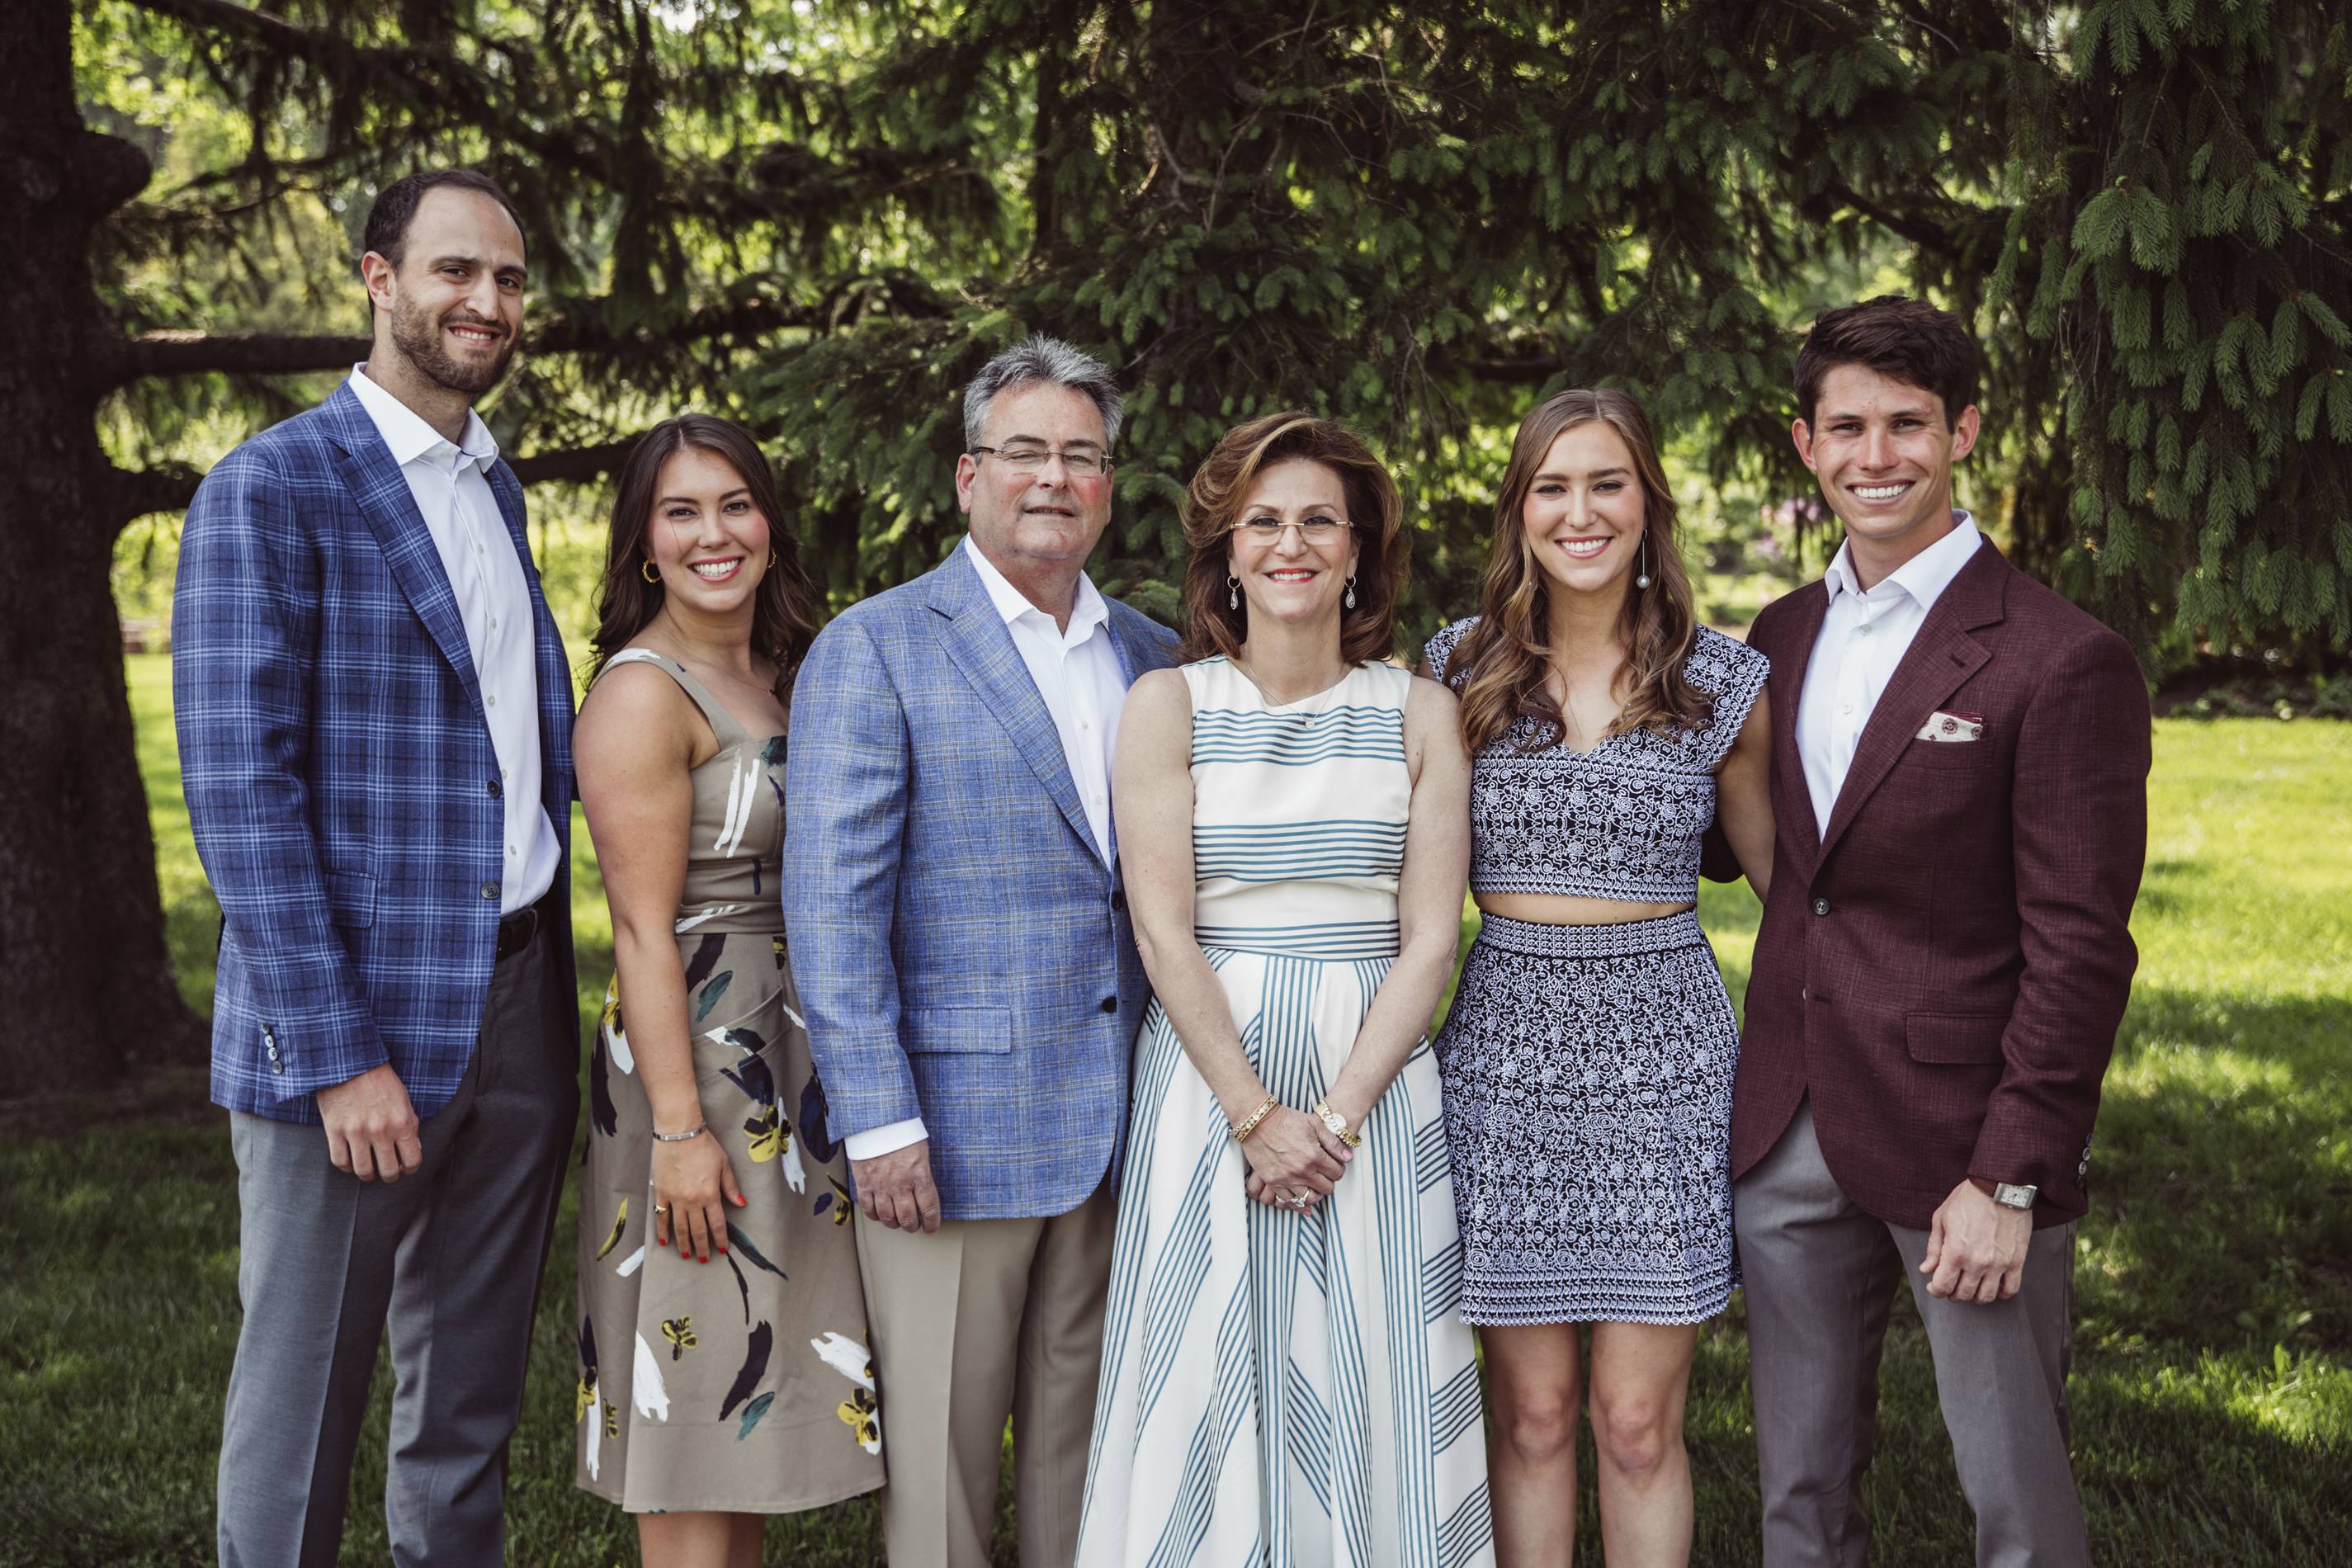 The Abramson Family photo